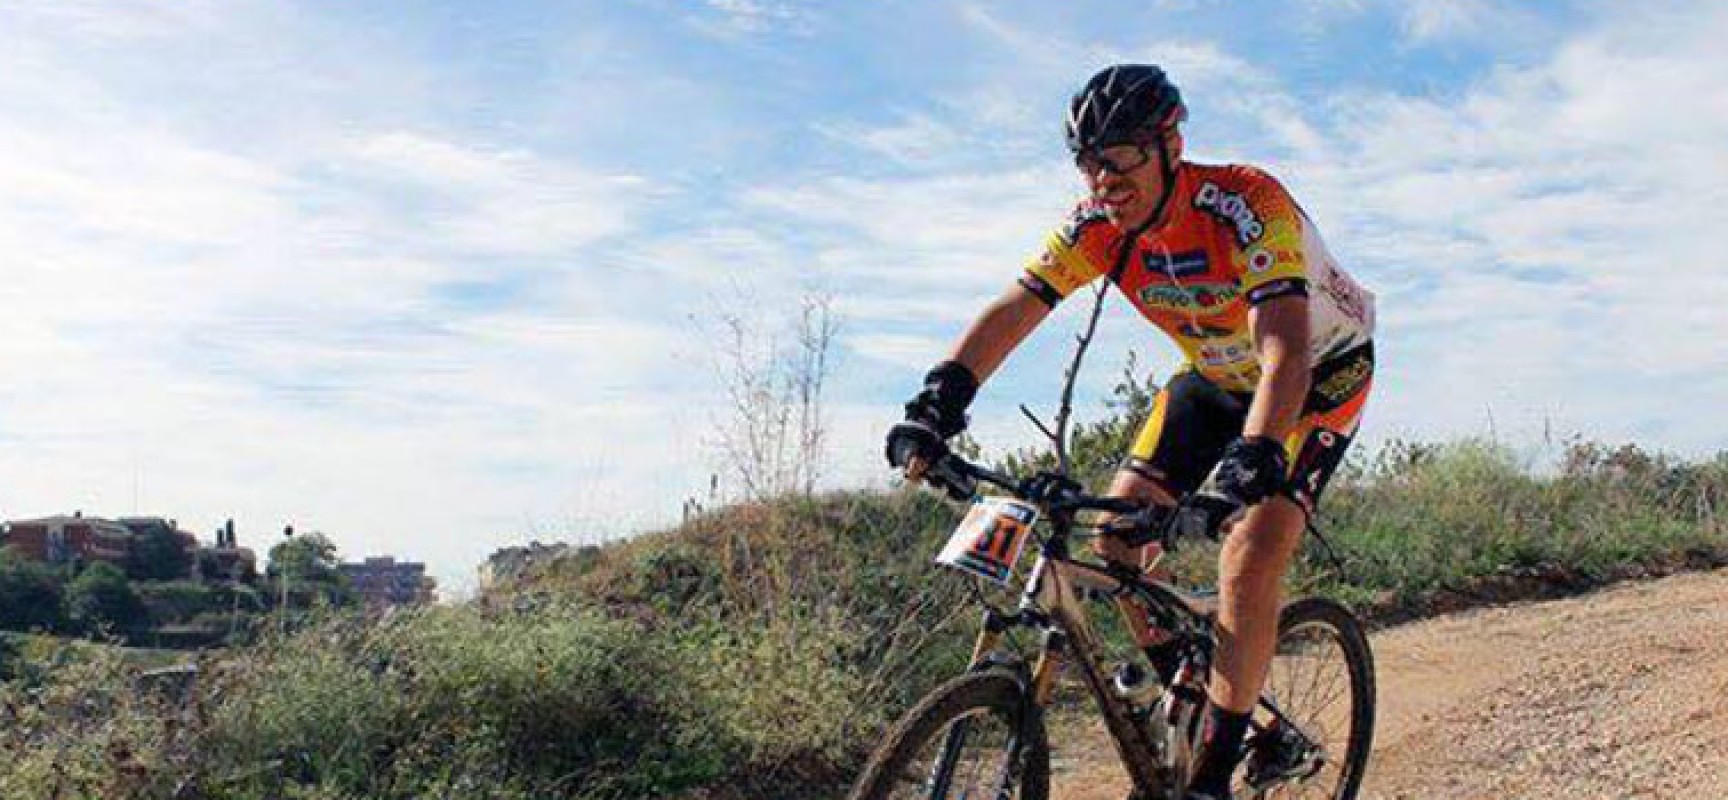 Morto Carlo Gangai, il ciclista caduto tra Trani e Corato